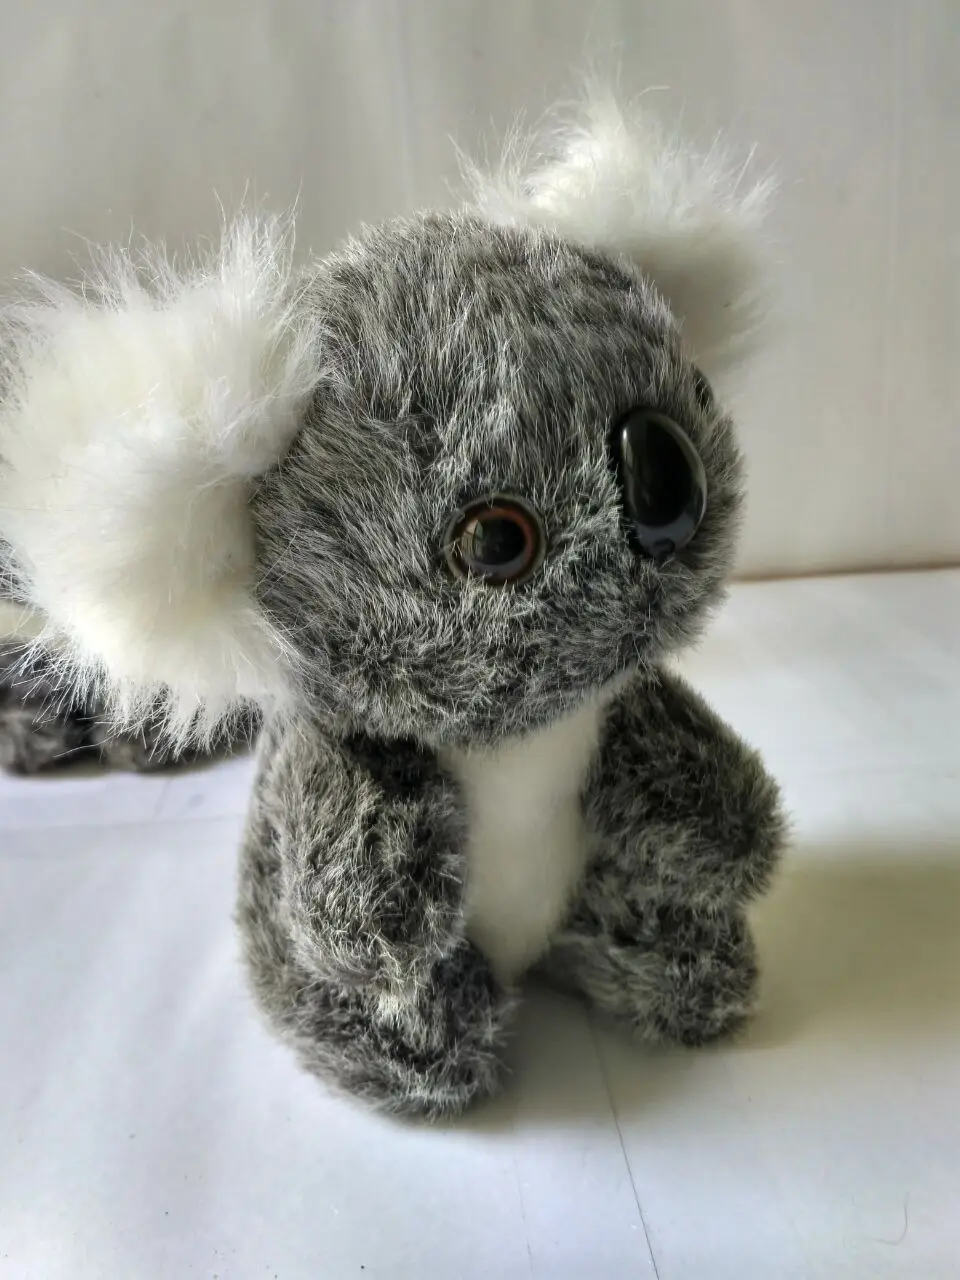 mini cute plush gray koala toy stuffed koala doll gift about 12cm